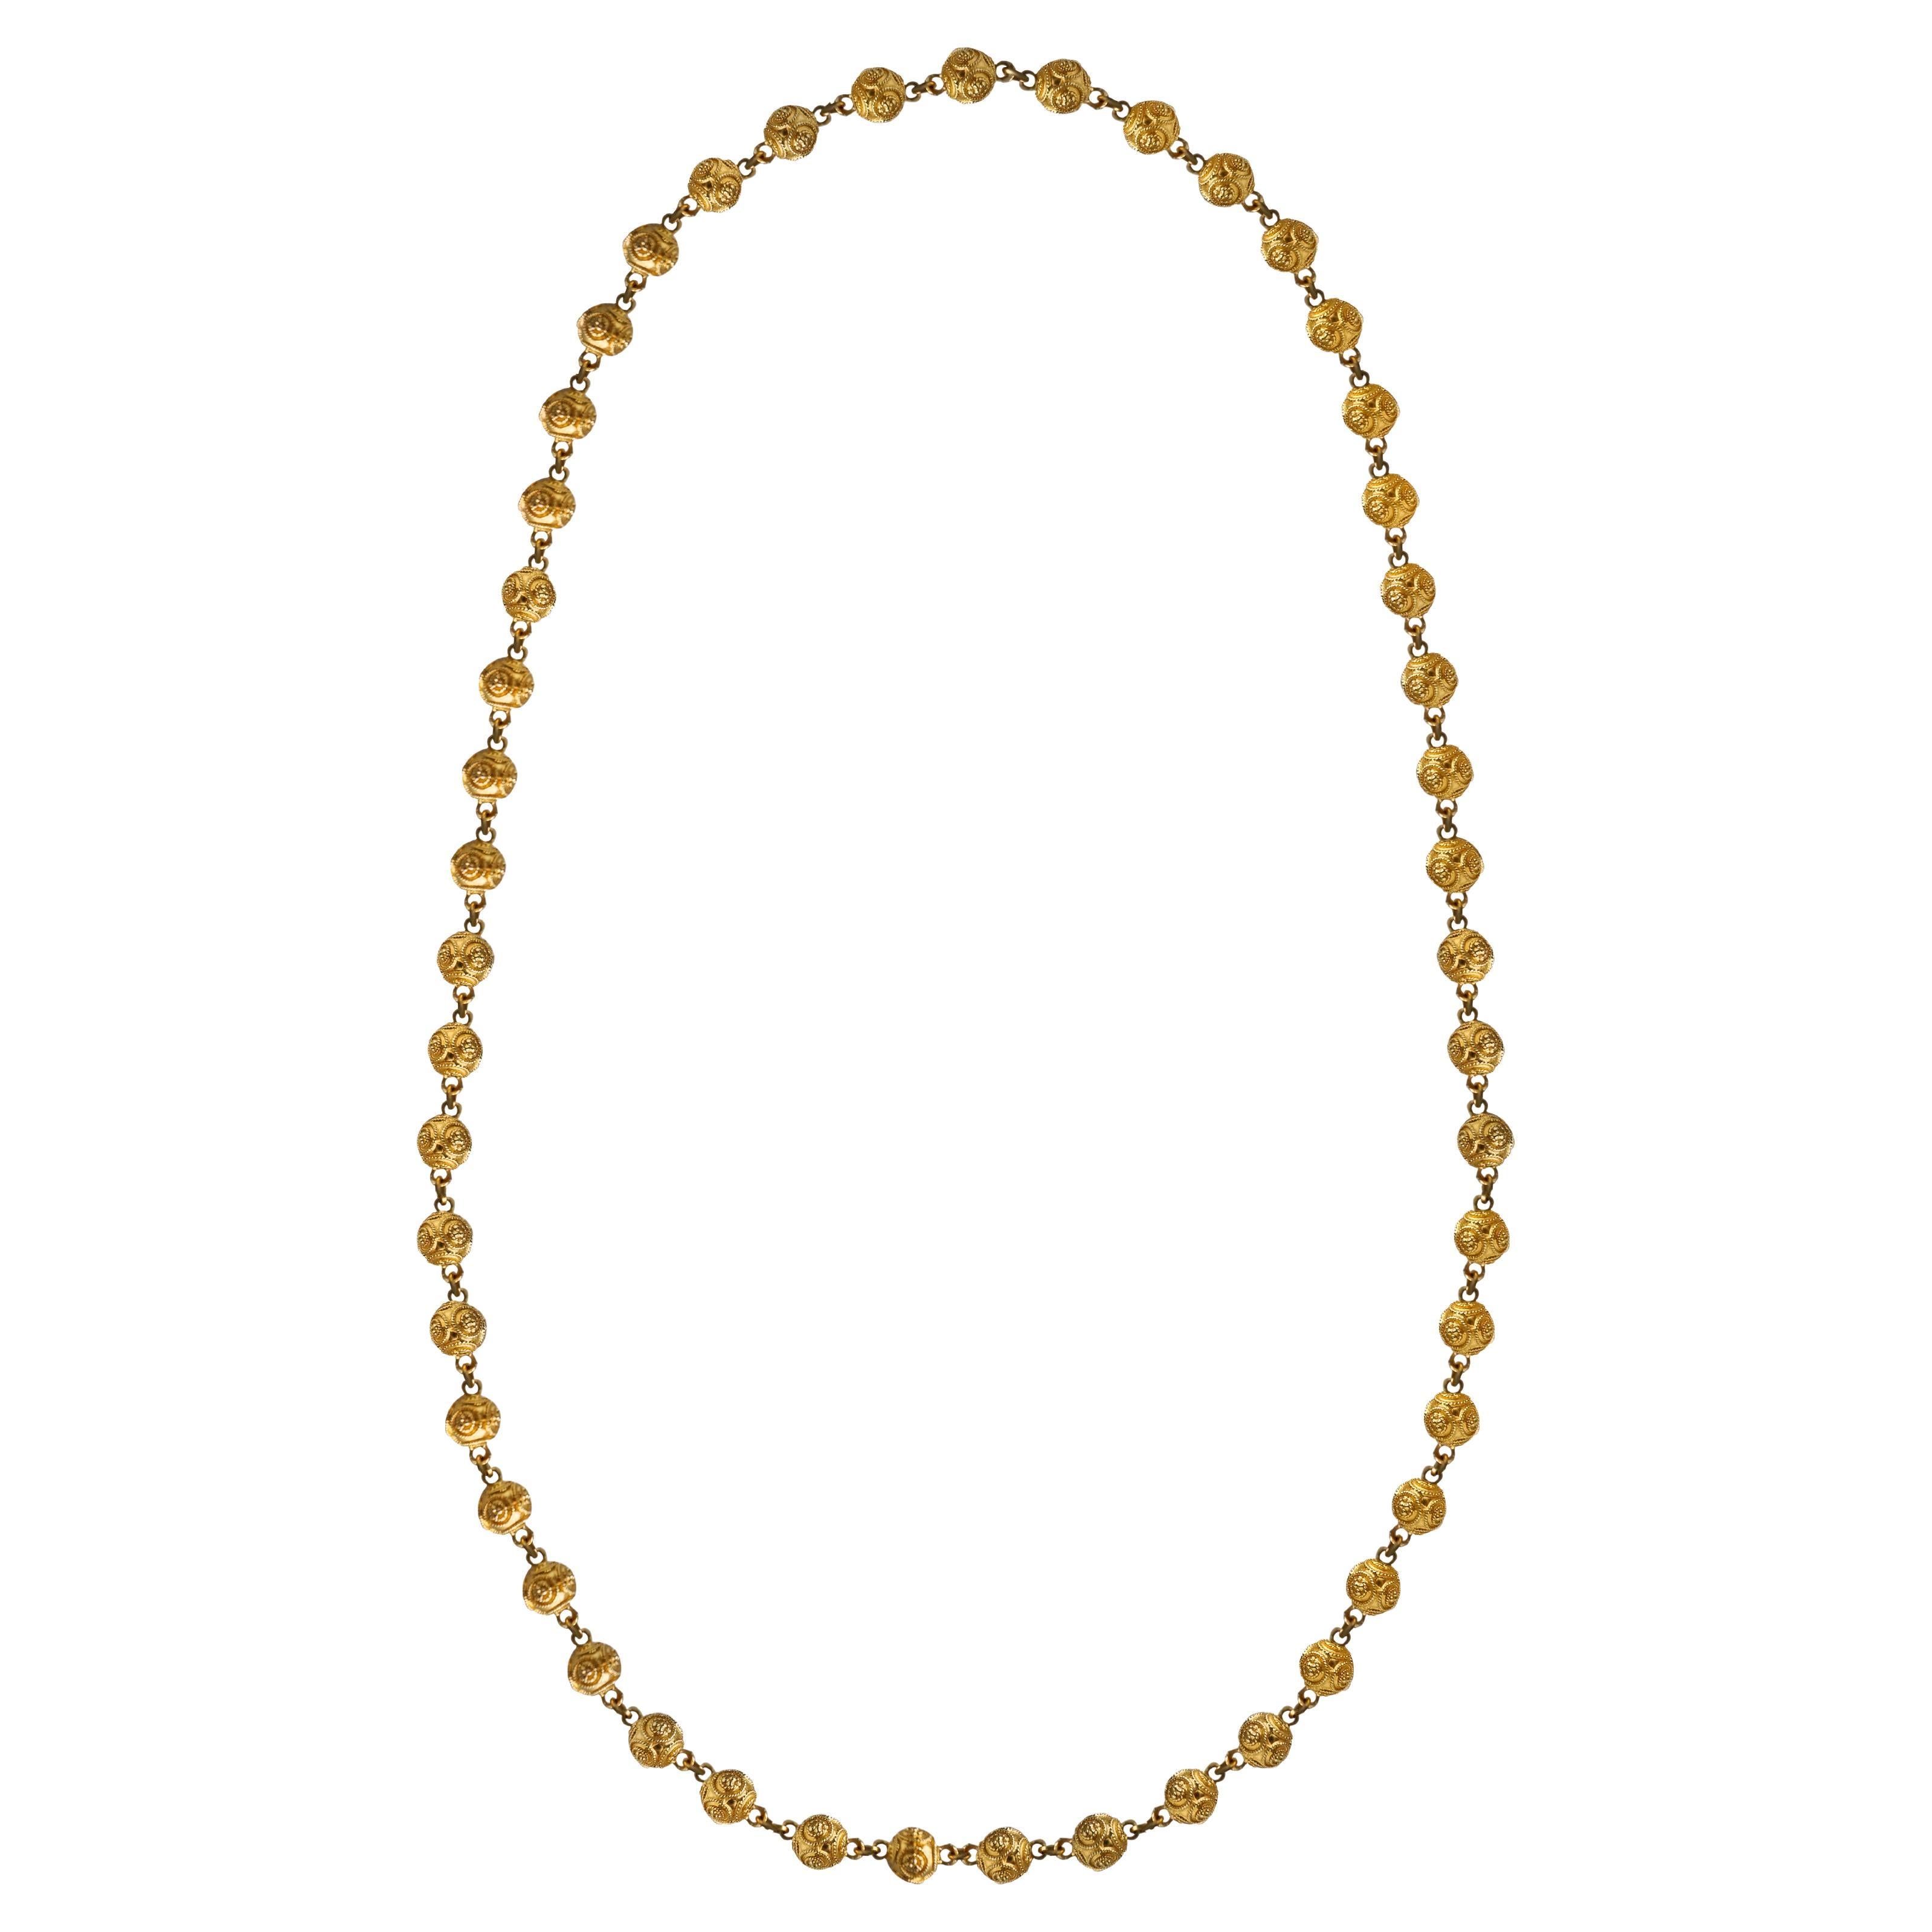 Collier boule en or massif 18K de style néo-étrusque. Un design unique relie 51 boules en or jaune dans un anneau à ressort ovale sans fermoir ouvert.
Dimensions de la boule d'or : 7,48 mm de long x 9 mm de large.
Dimensions du collier : 32